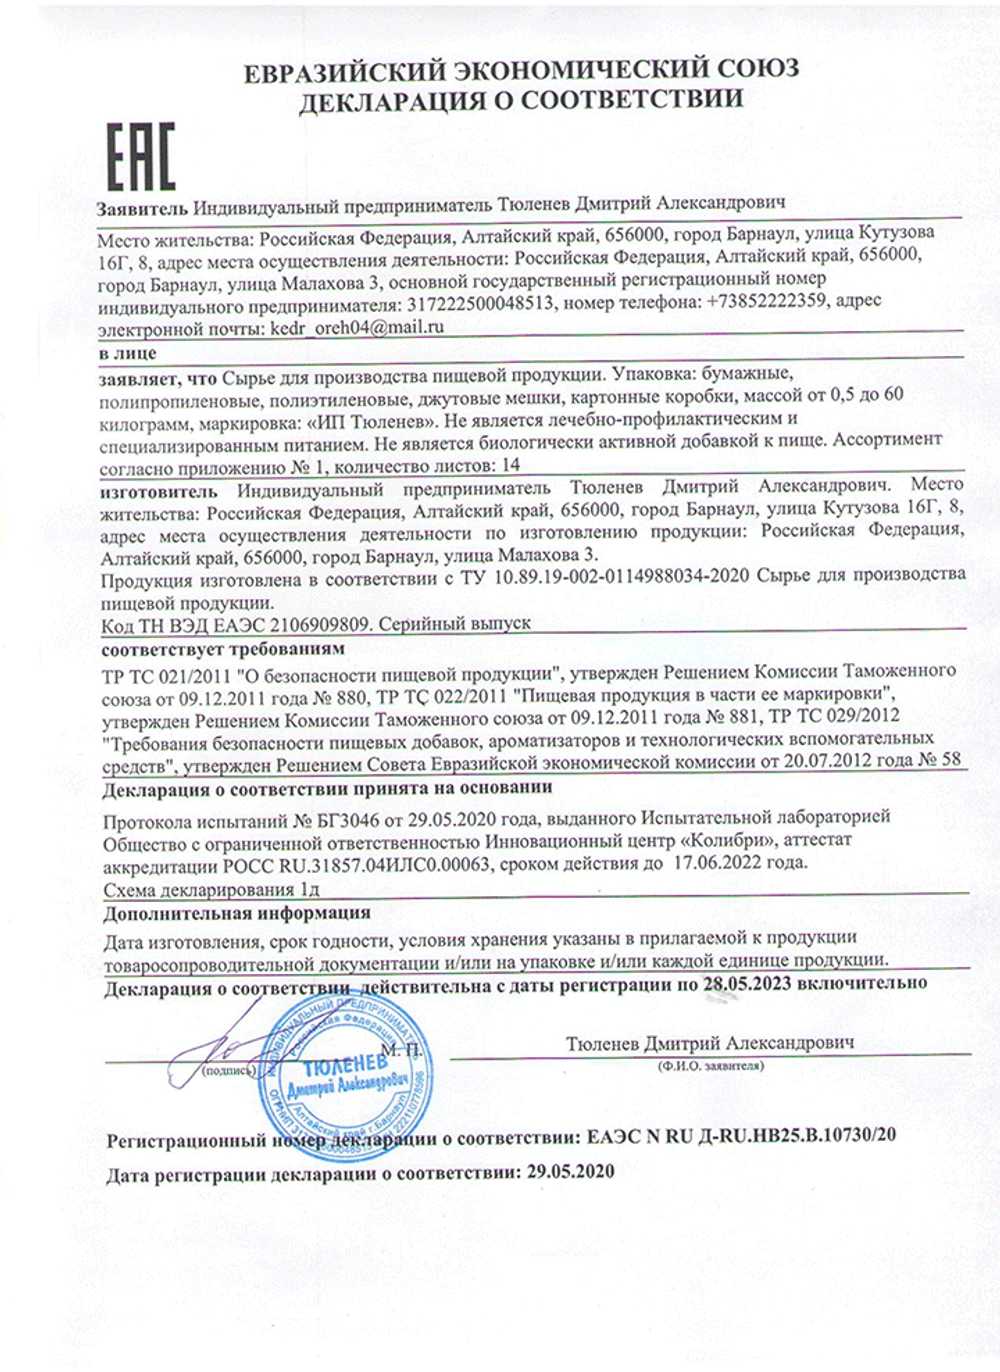 Изображение сертификата соответствия травы Якорцы стелющиеся-adonnis.ru